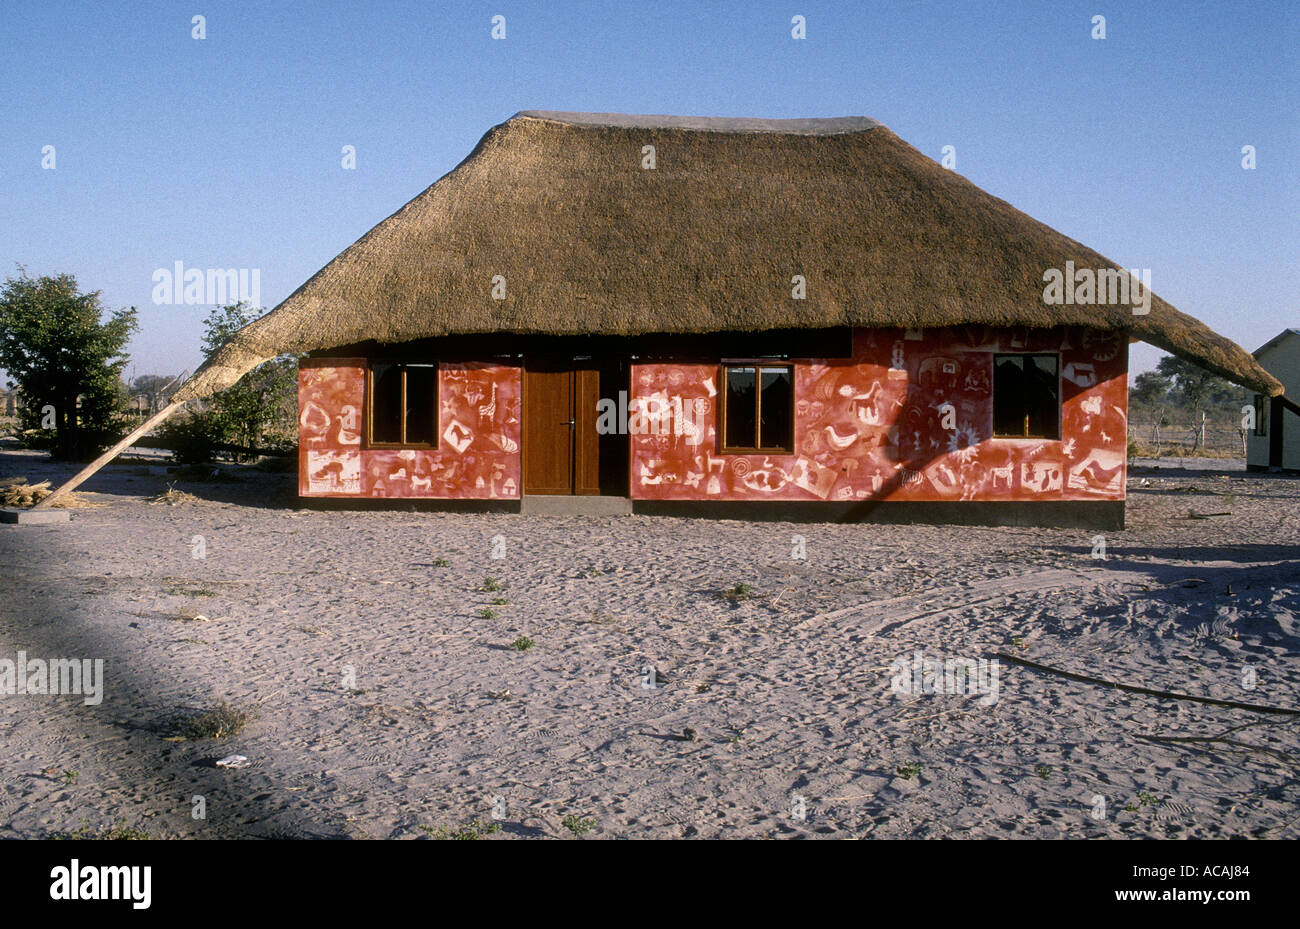 Traditionellen Stil strohgedeckten Gebäude in einem Souvenirladen Kwai Botswana Stockfoto